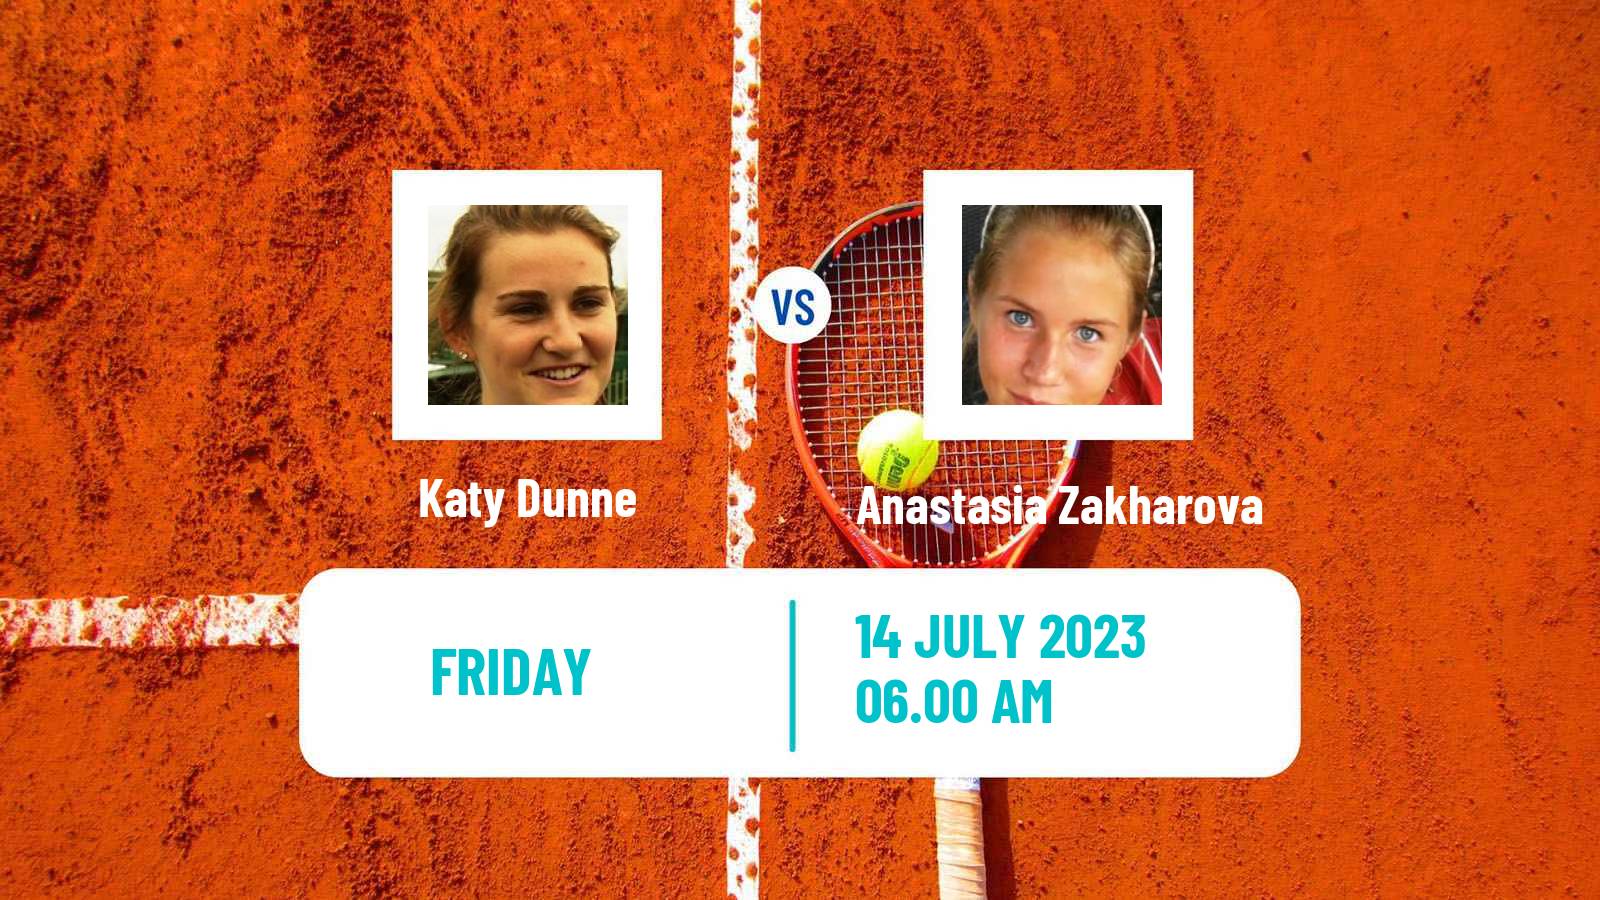 Tennis ITF W25 Corroios Seixal Women Katy Dunne - Anastasia Zakharova